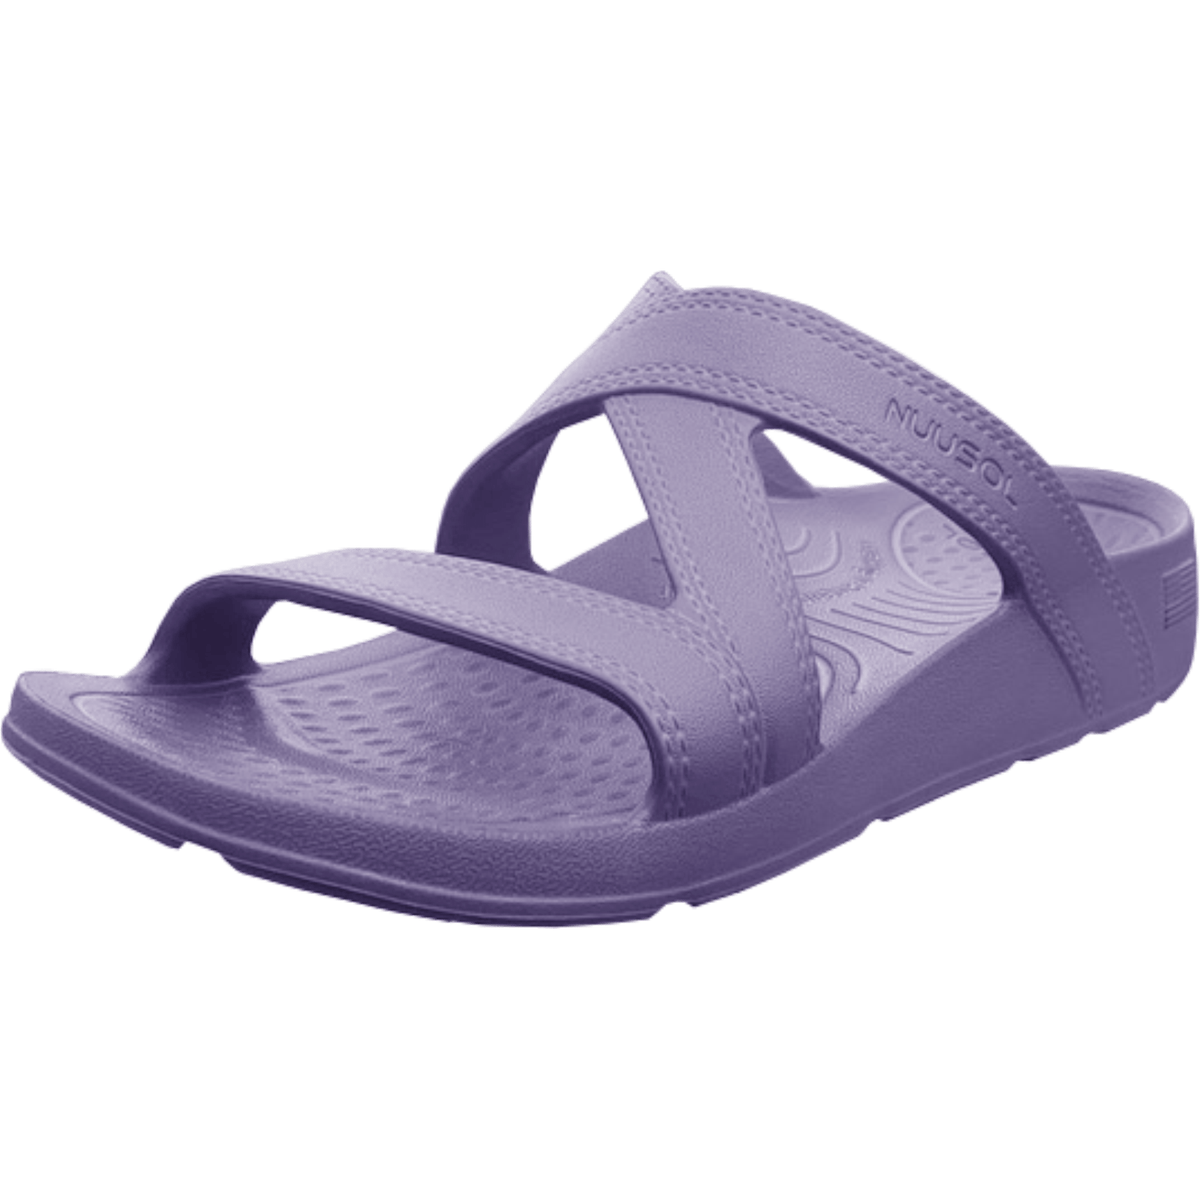 NuuSol Womens Hailey Slide Sandals - GoBros.com